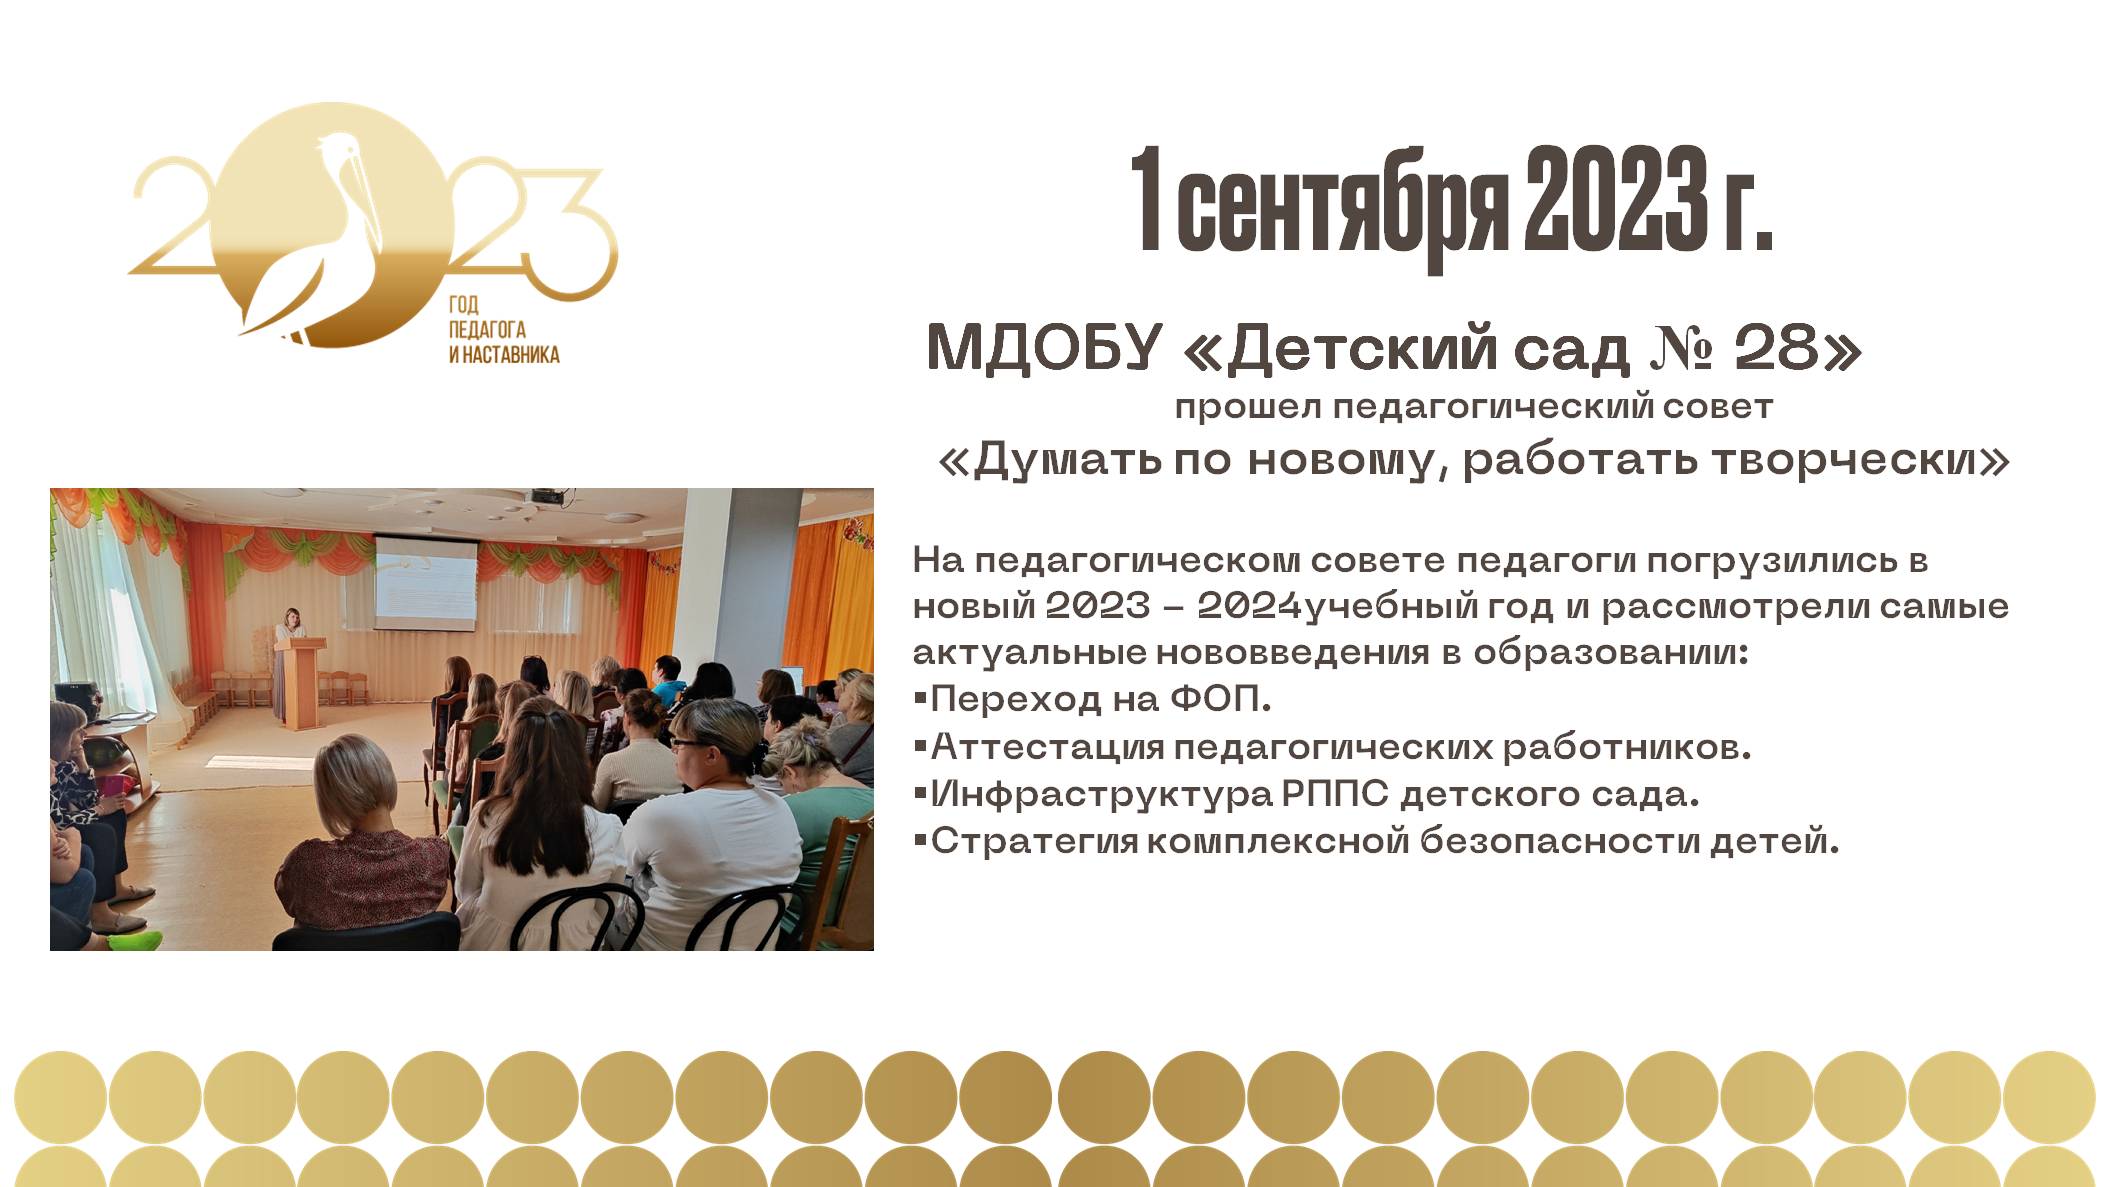 Педагогический совет 2023 2024 в школе. Сертолово МДОБУ детский сад Кожемякина.